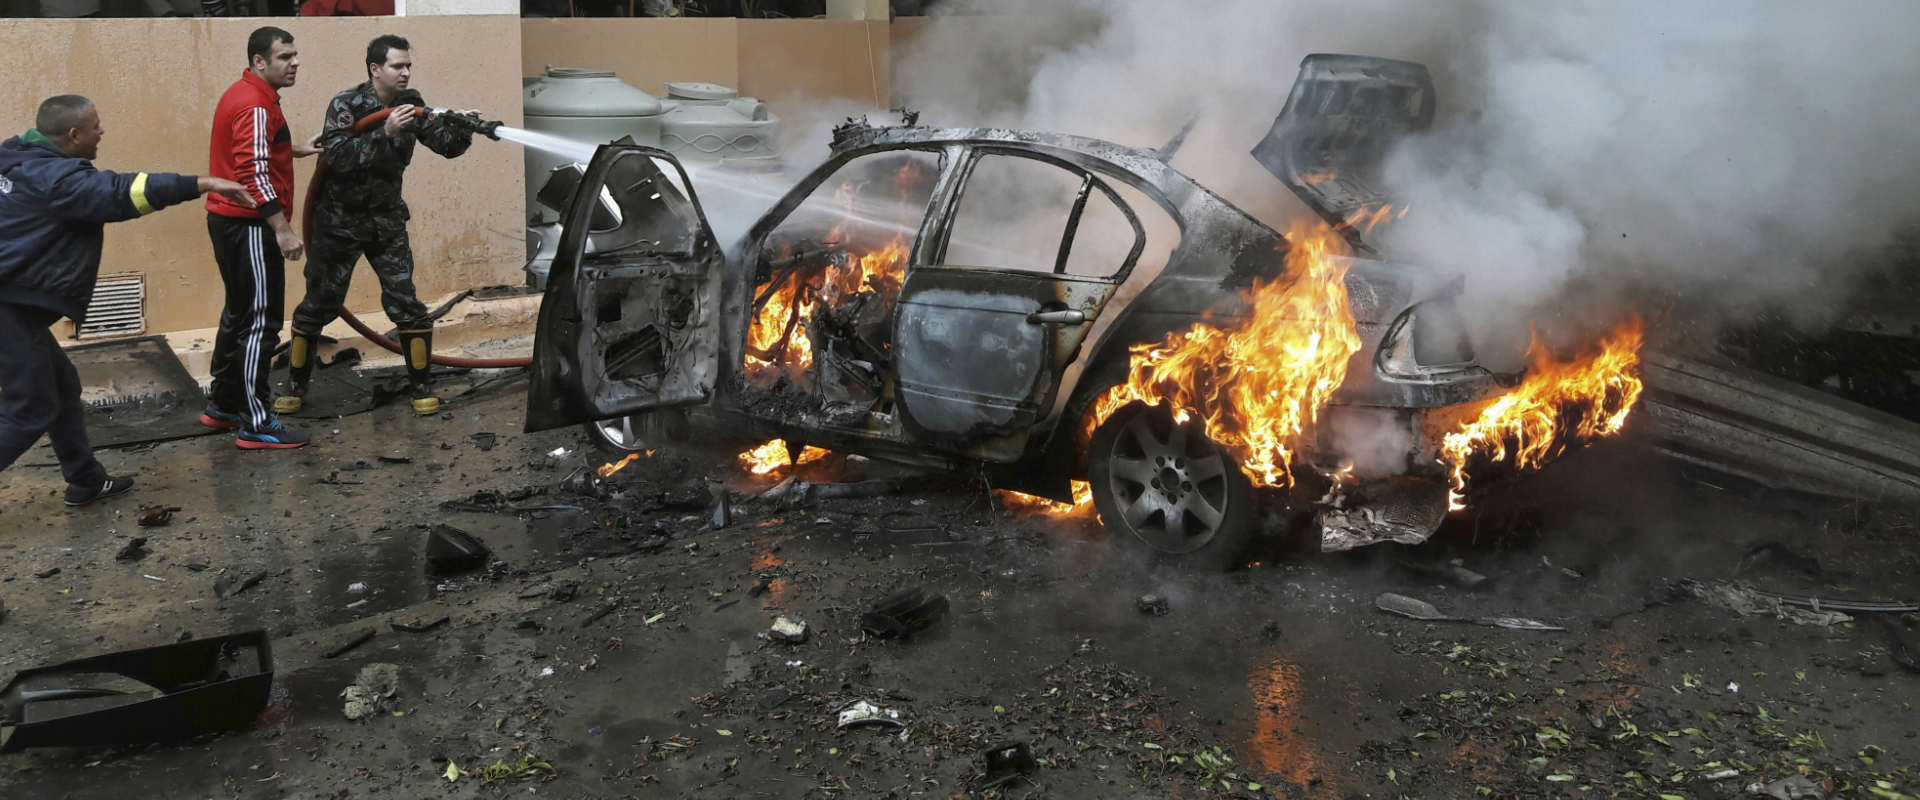 הפיצוץ במכוניתו של מוחמד חמדאן